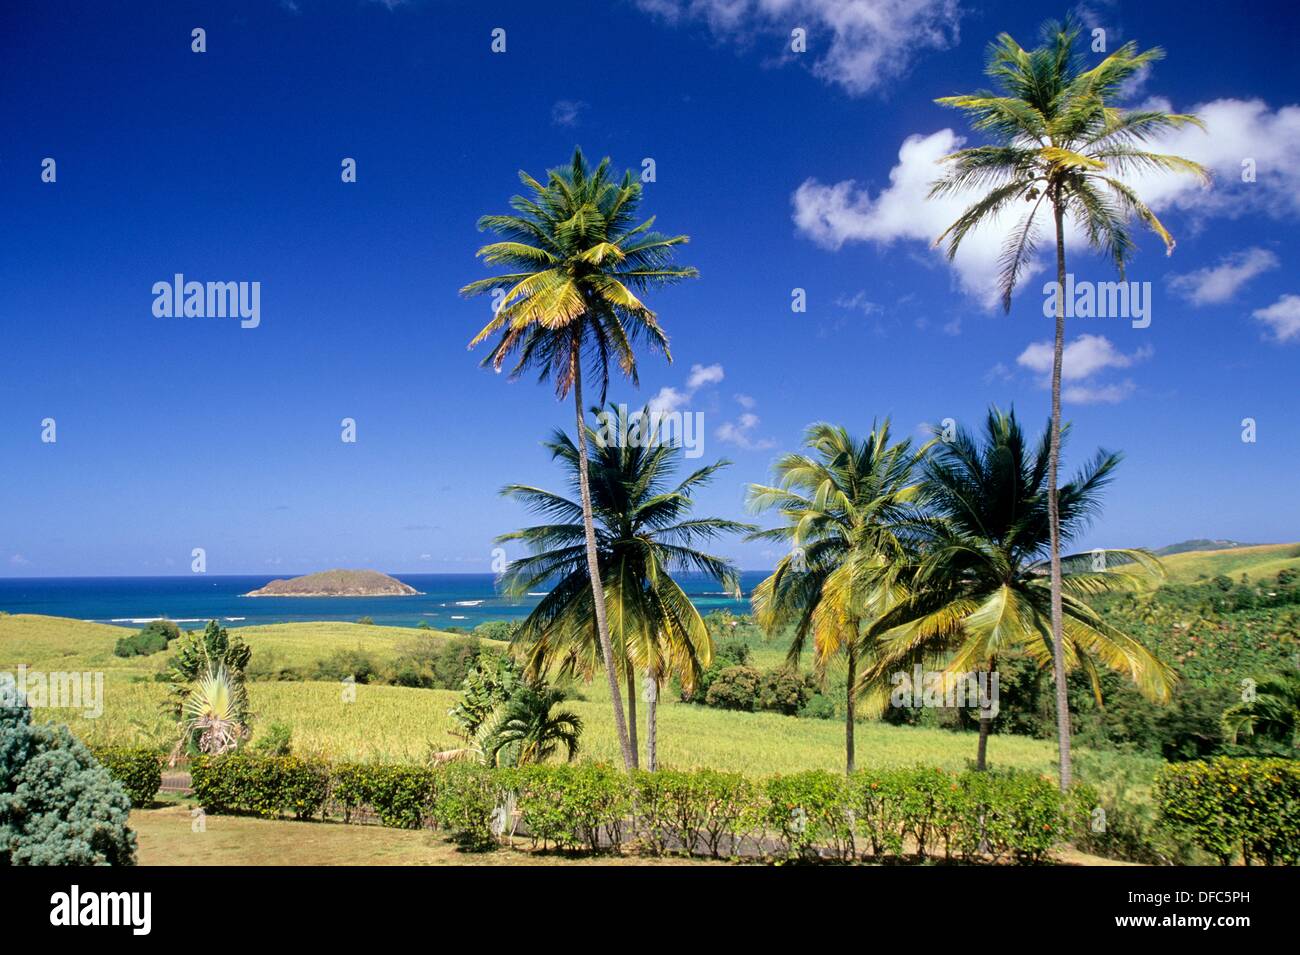 Paysage de la côte atlantique entre Sainte-Marie et la Trinité Ile de la Martinique Département et Région d'Outremer francais Banque D'Images